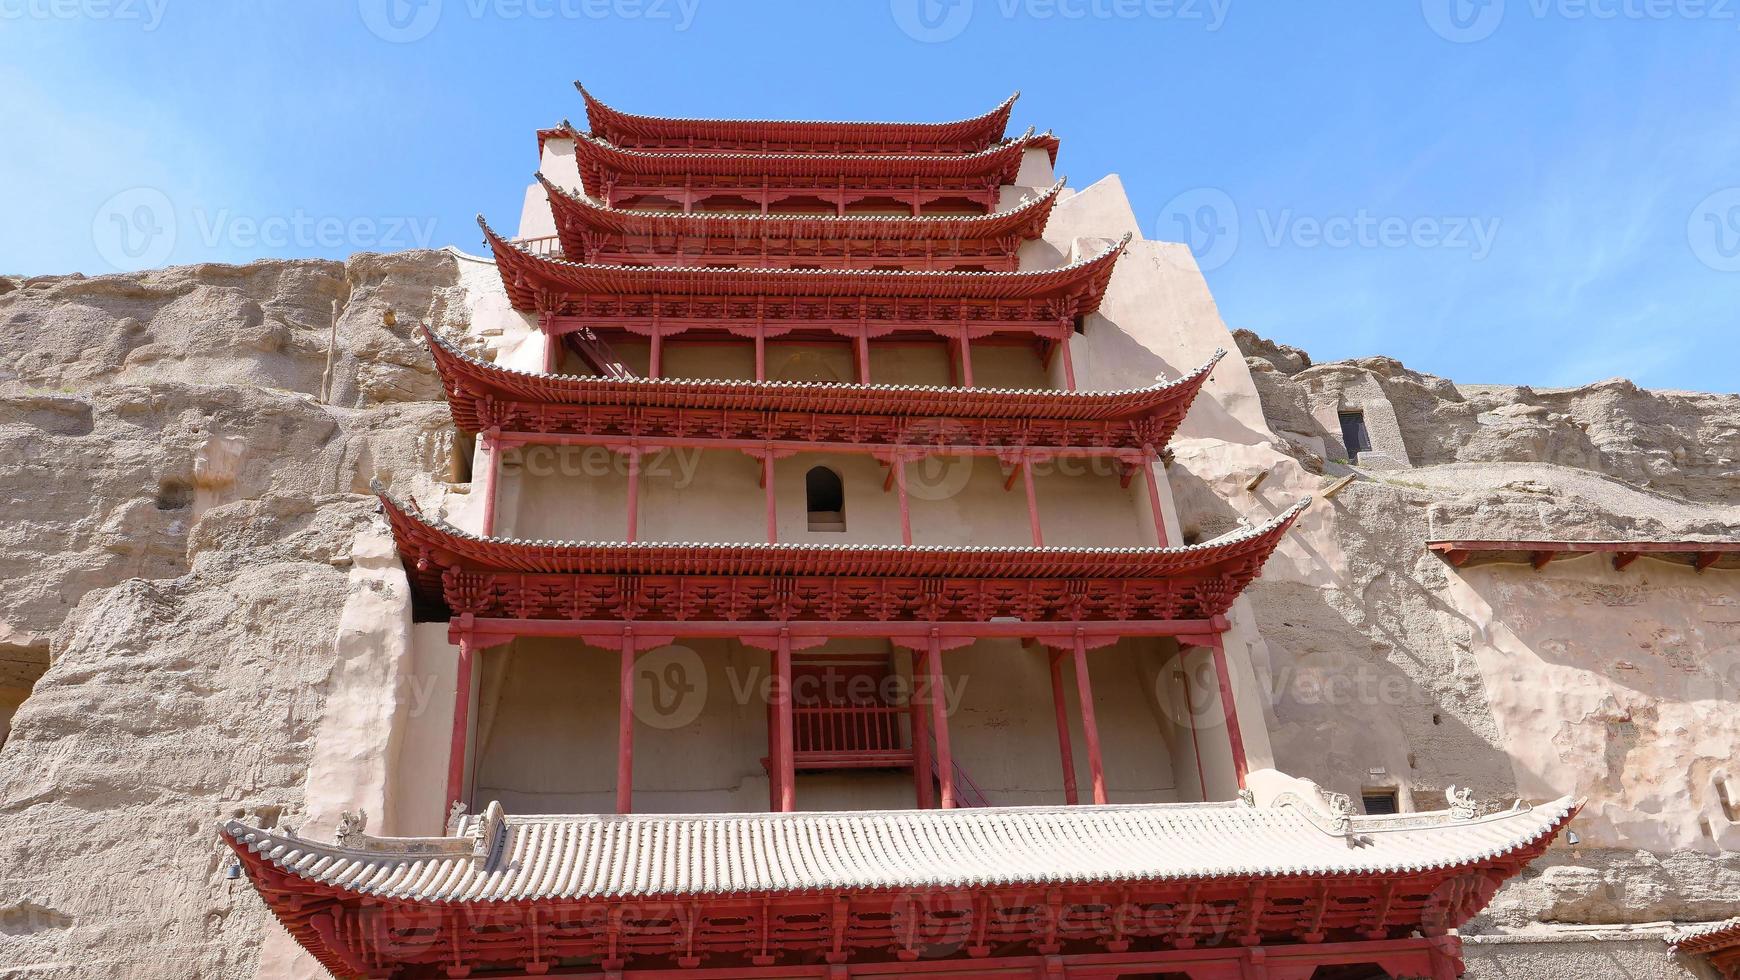 arquitetura budista antiga grutas de dunhuang mogao na china de gansu foto